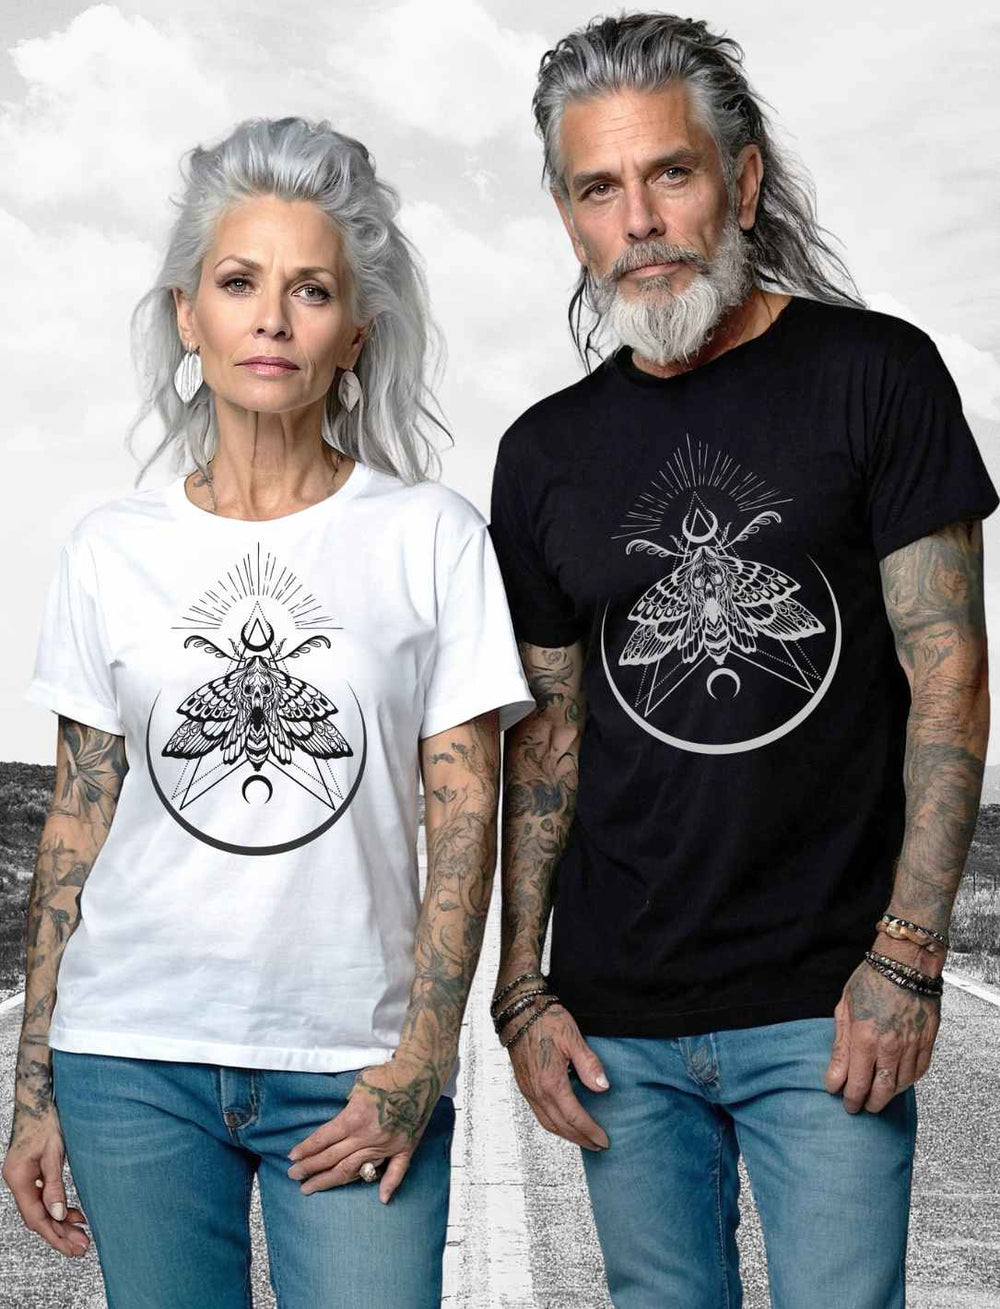 Modisches älteres Paar trägt 'Lichtbringer der Verwandlung' T-Shirts, die Frau in einem weißen und der Mann in einem schwarzen Shirt mit auffälligem Nachtfalter-Design, vor einem Hintergrund, der den Kontrast zwischen einer klaren Himmelsansicht und einer unscharfen Straßenszene zeigt